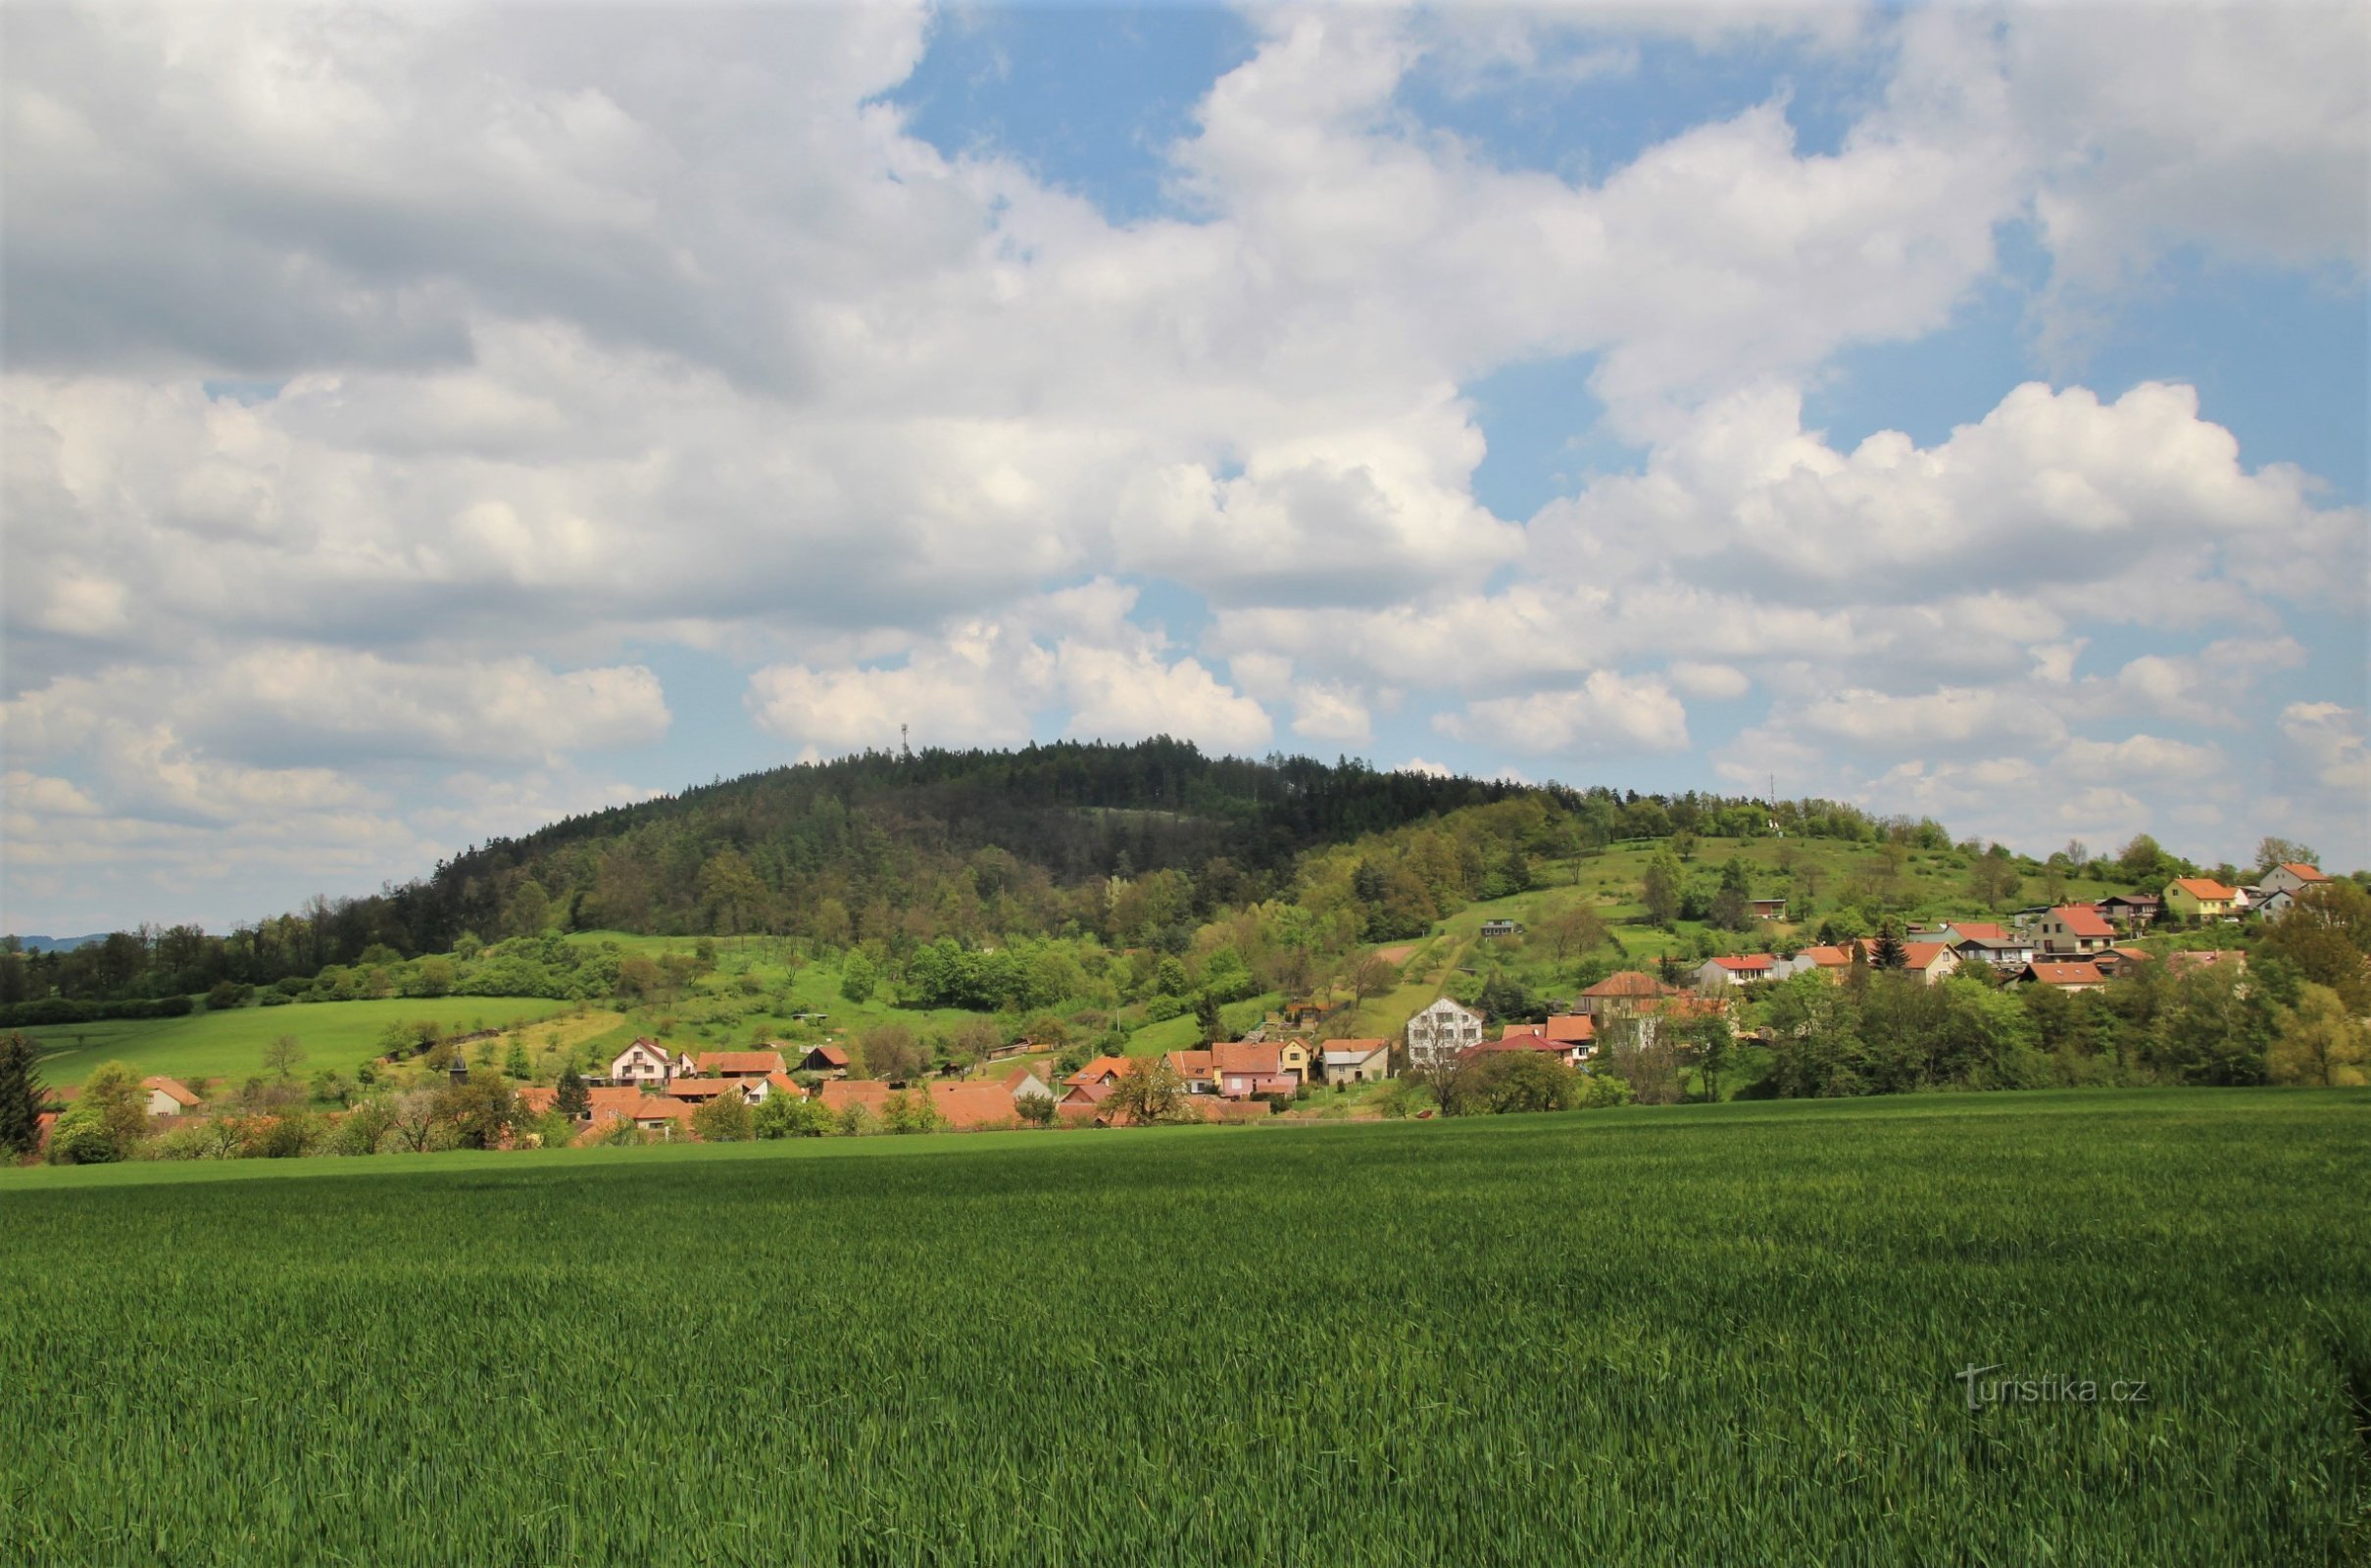 Veduta del crinale di Fáberka, in primo piano il villaggio di Jabloňany, a destra c'è un belvedere sul crinale